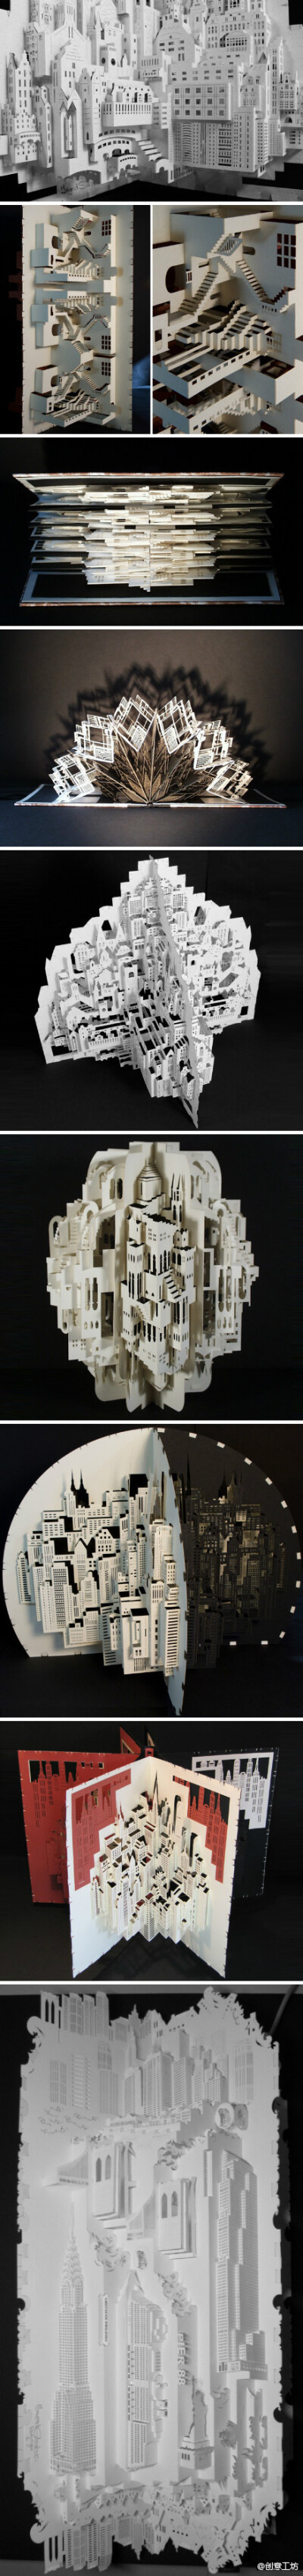 来自阿姆斯特丹的剪纸艺术家Ingrid Siliakus的立体剪纸建筑作品，细节精细而丰富，极富创造力。